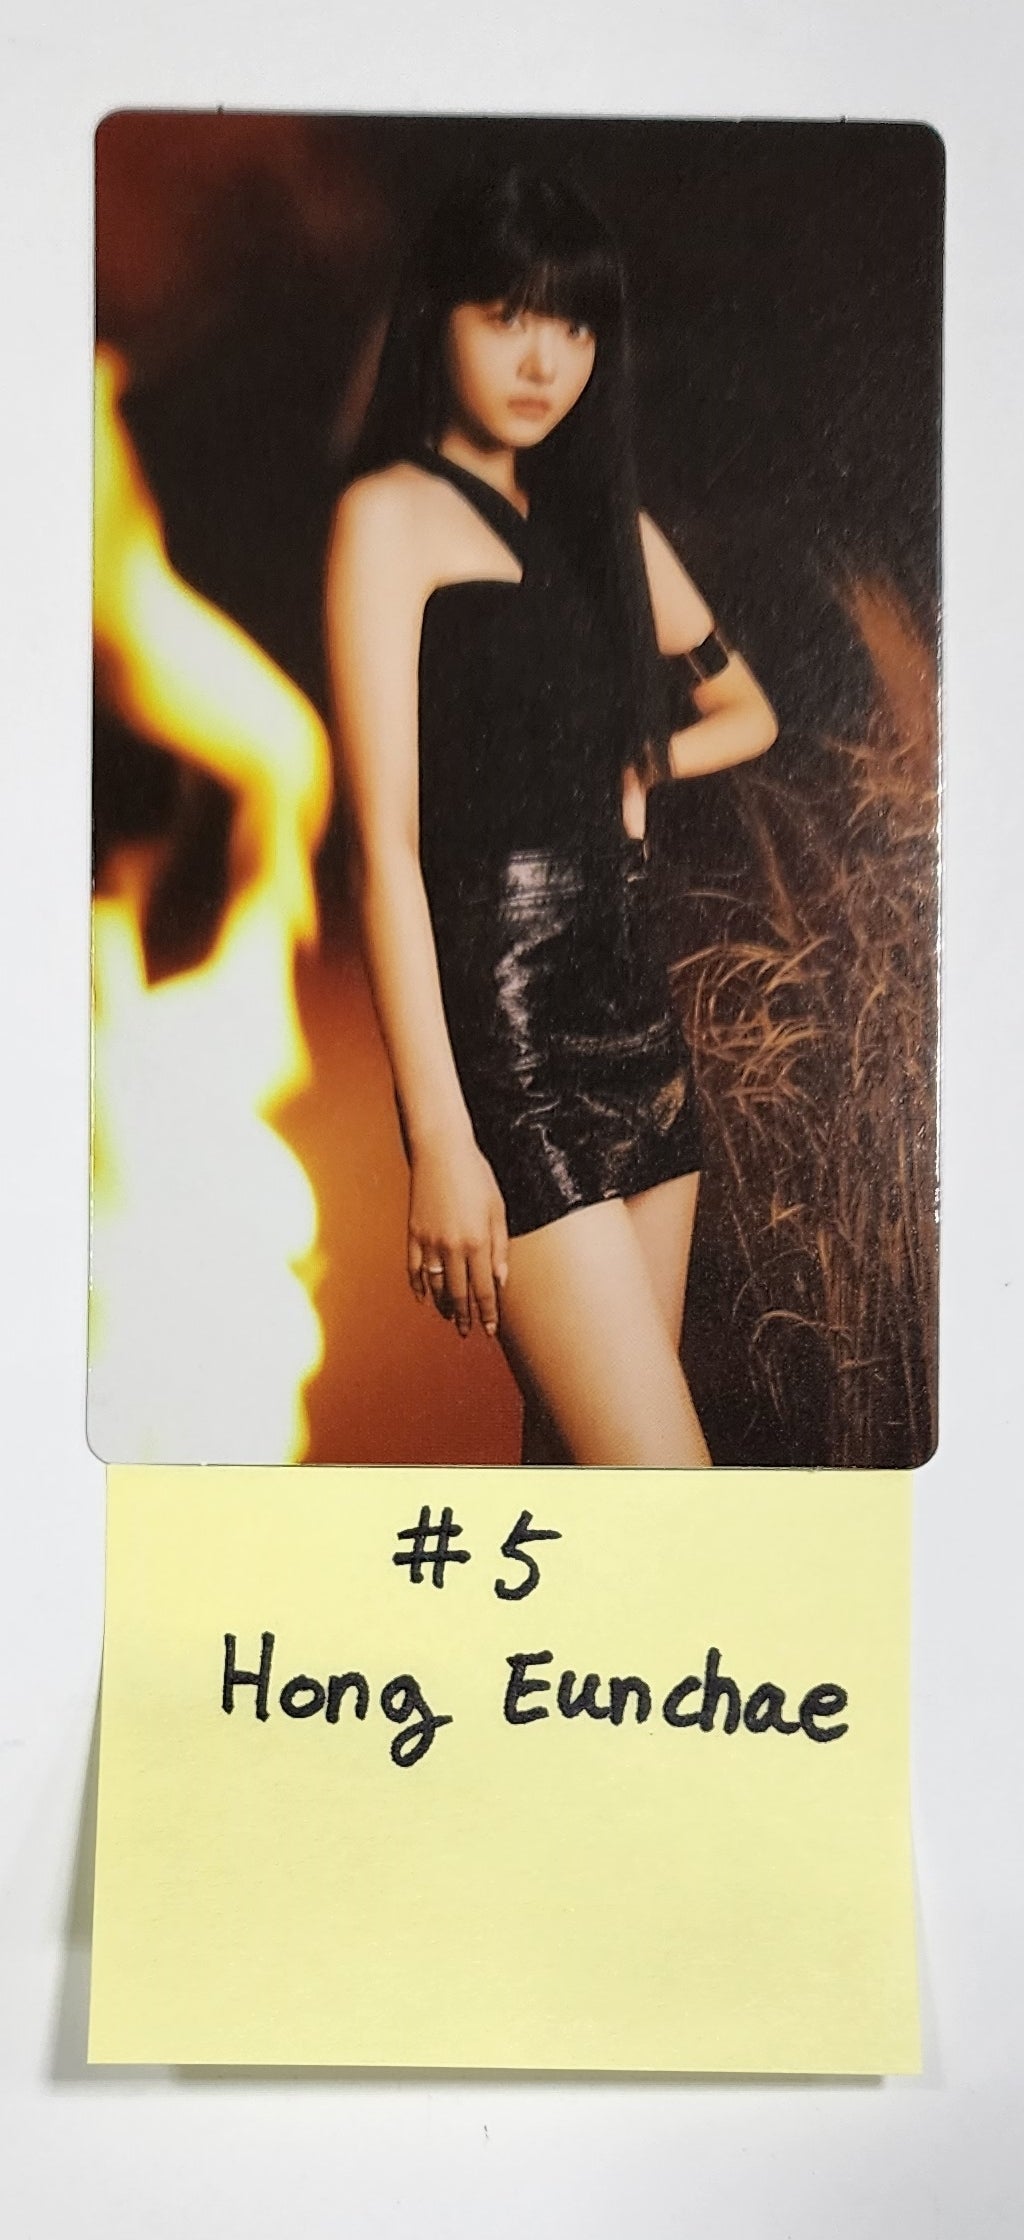 LE SSERAFIM "FLAME RISES" - Mini Photocard (2) [Restocked 8/4]